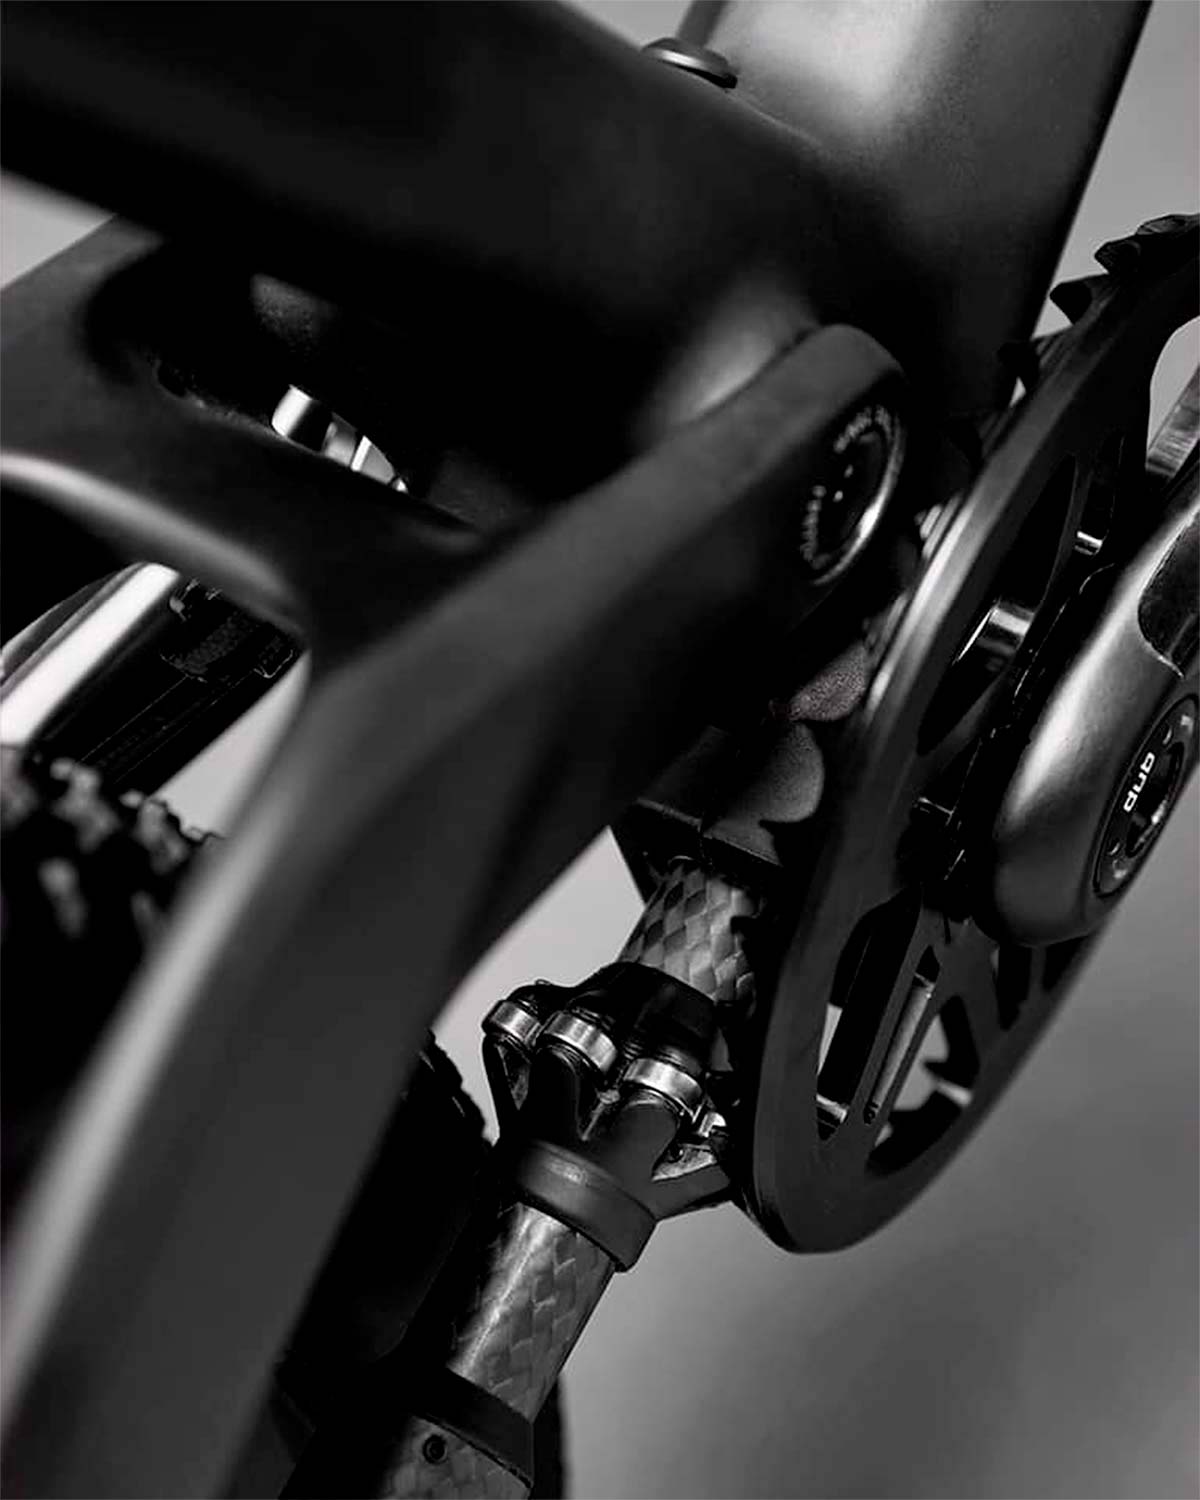 CeramicSpeed busca financiación para lanzar al mercado su transmisión sin cadena para bicicletas